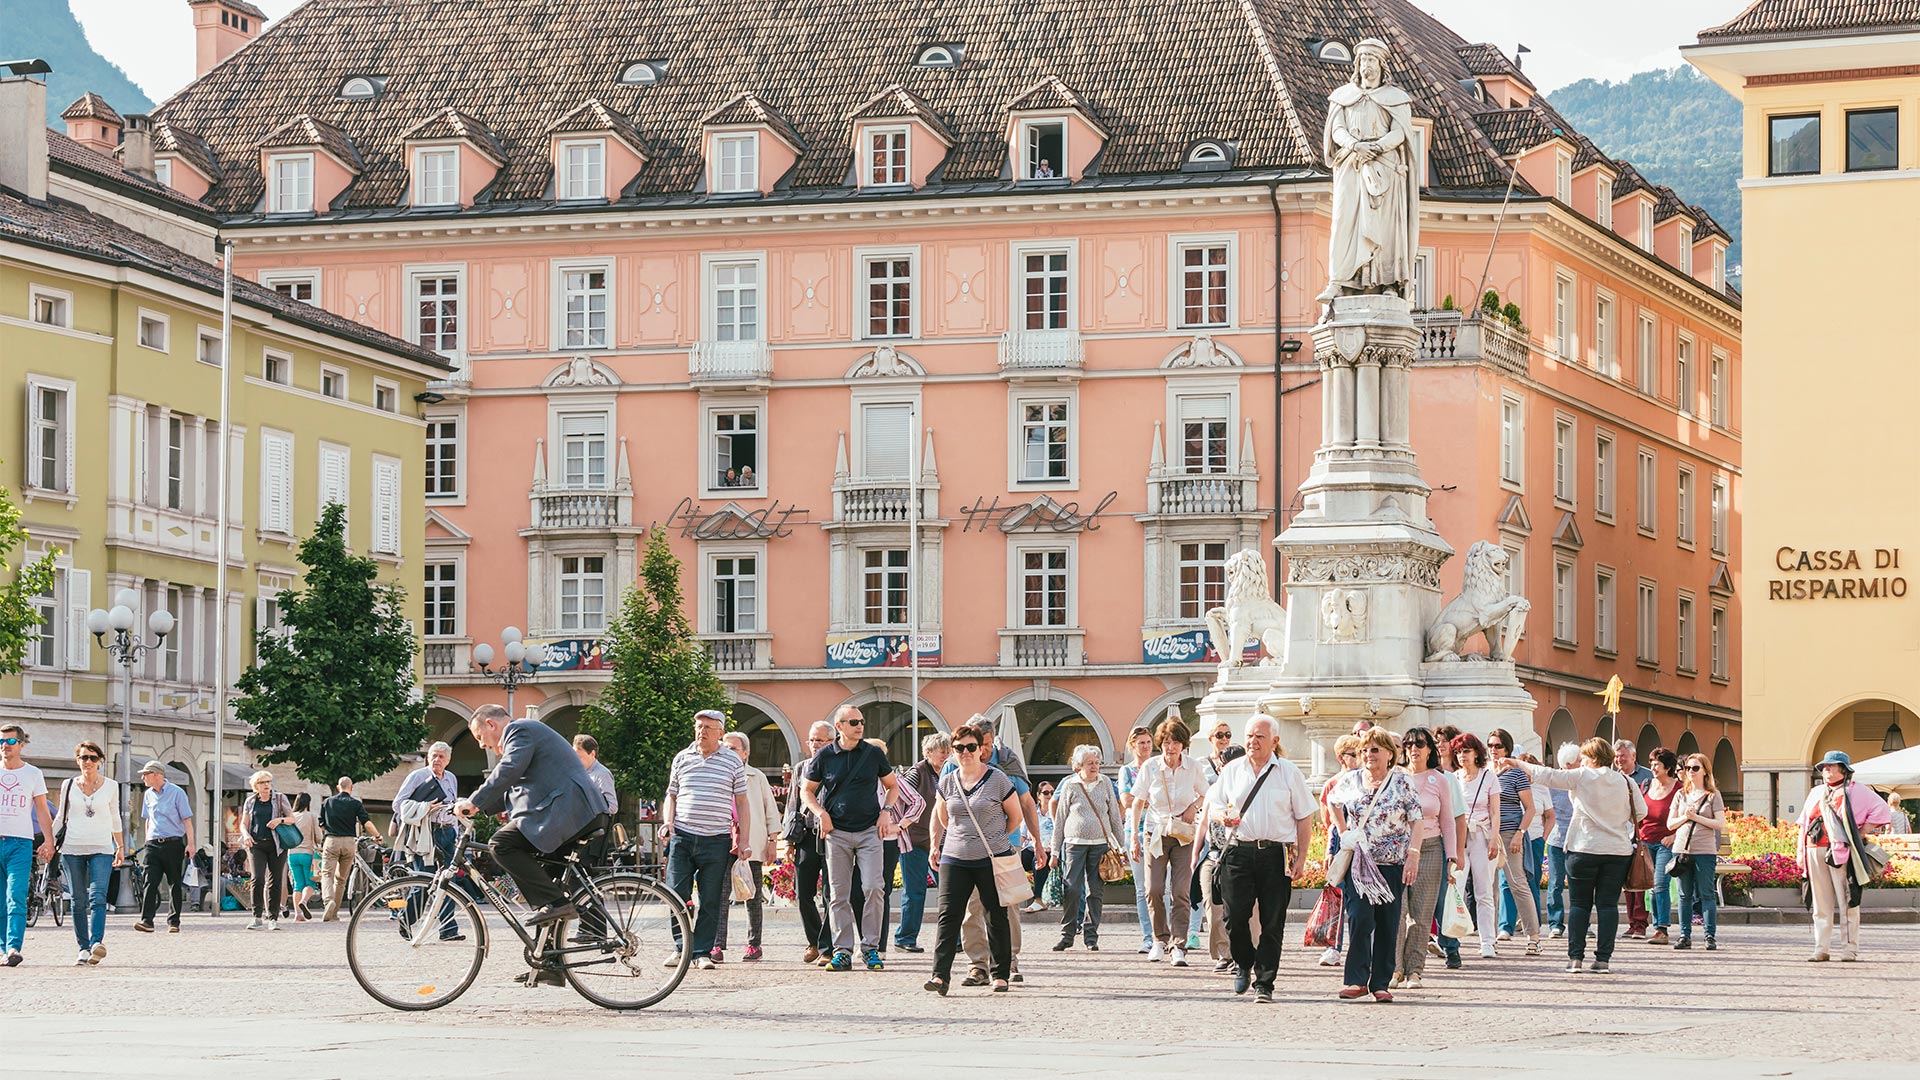 Fotografia sulla folla di cittadini che si muovono, sia a piedi che in bici, in piazza Walther in una giornata di sole.